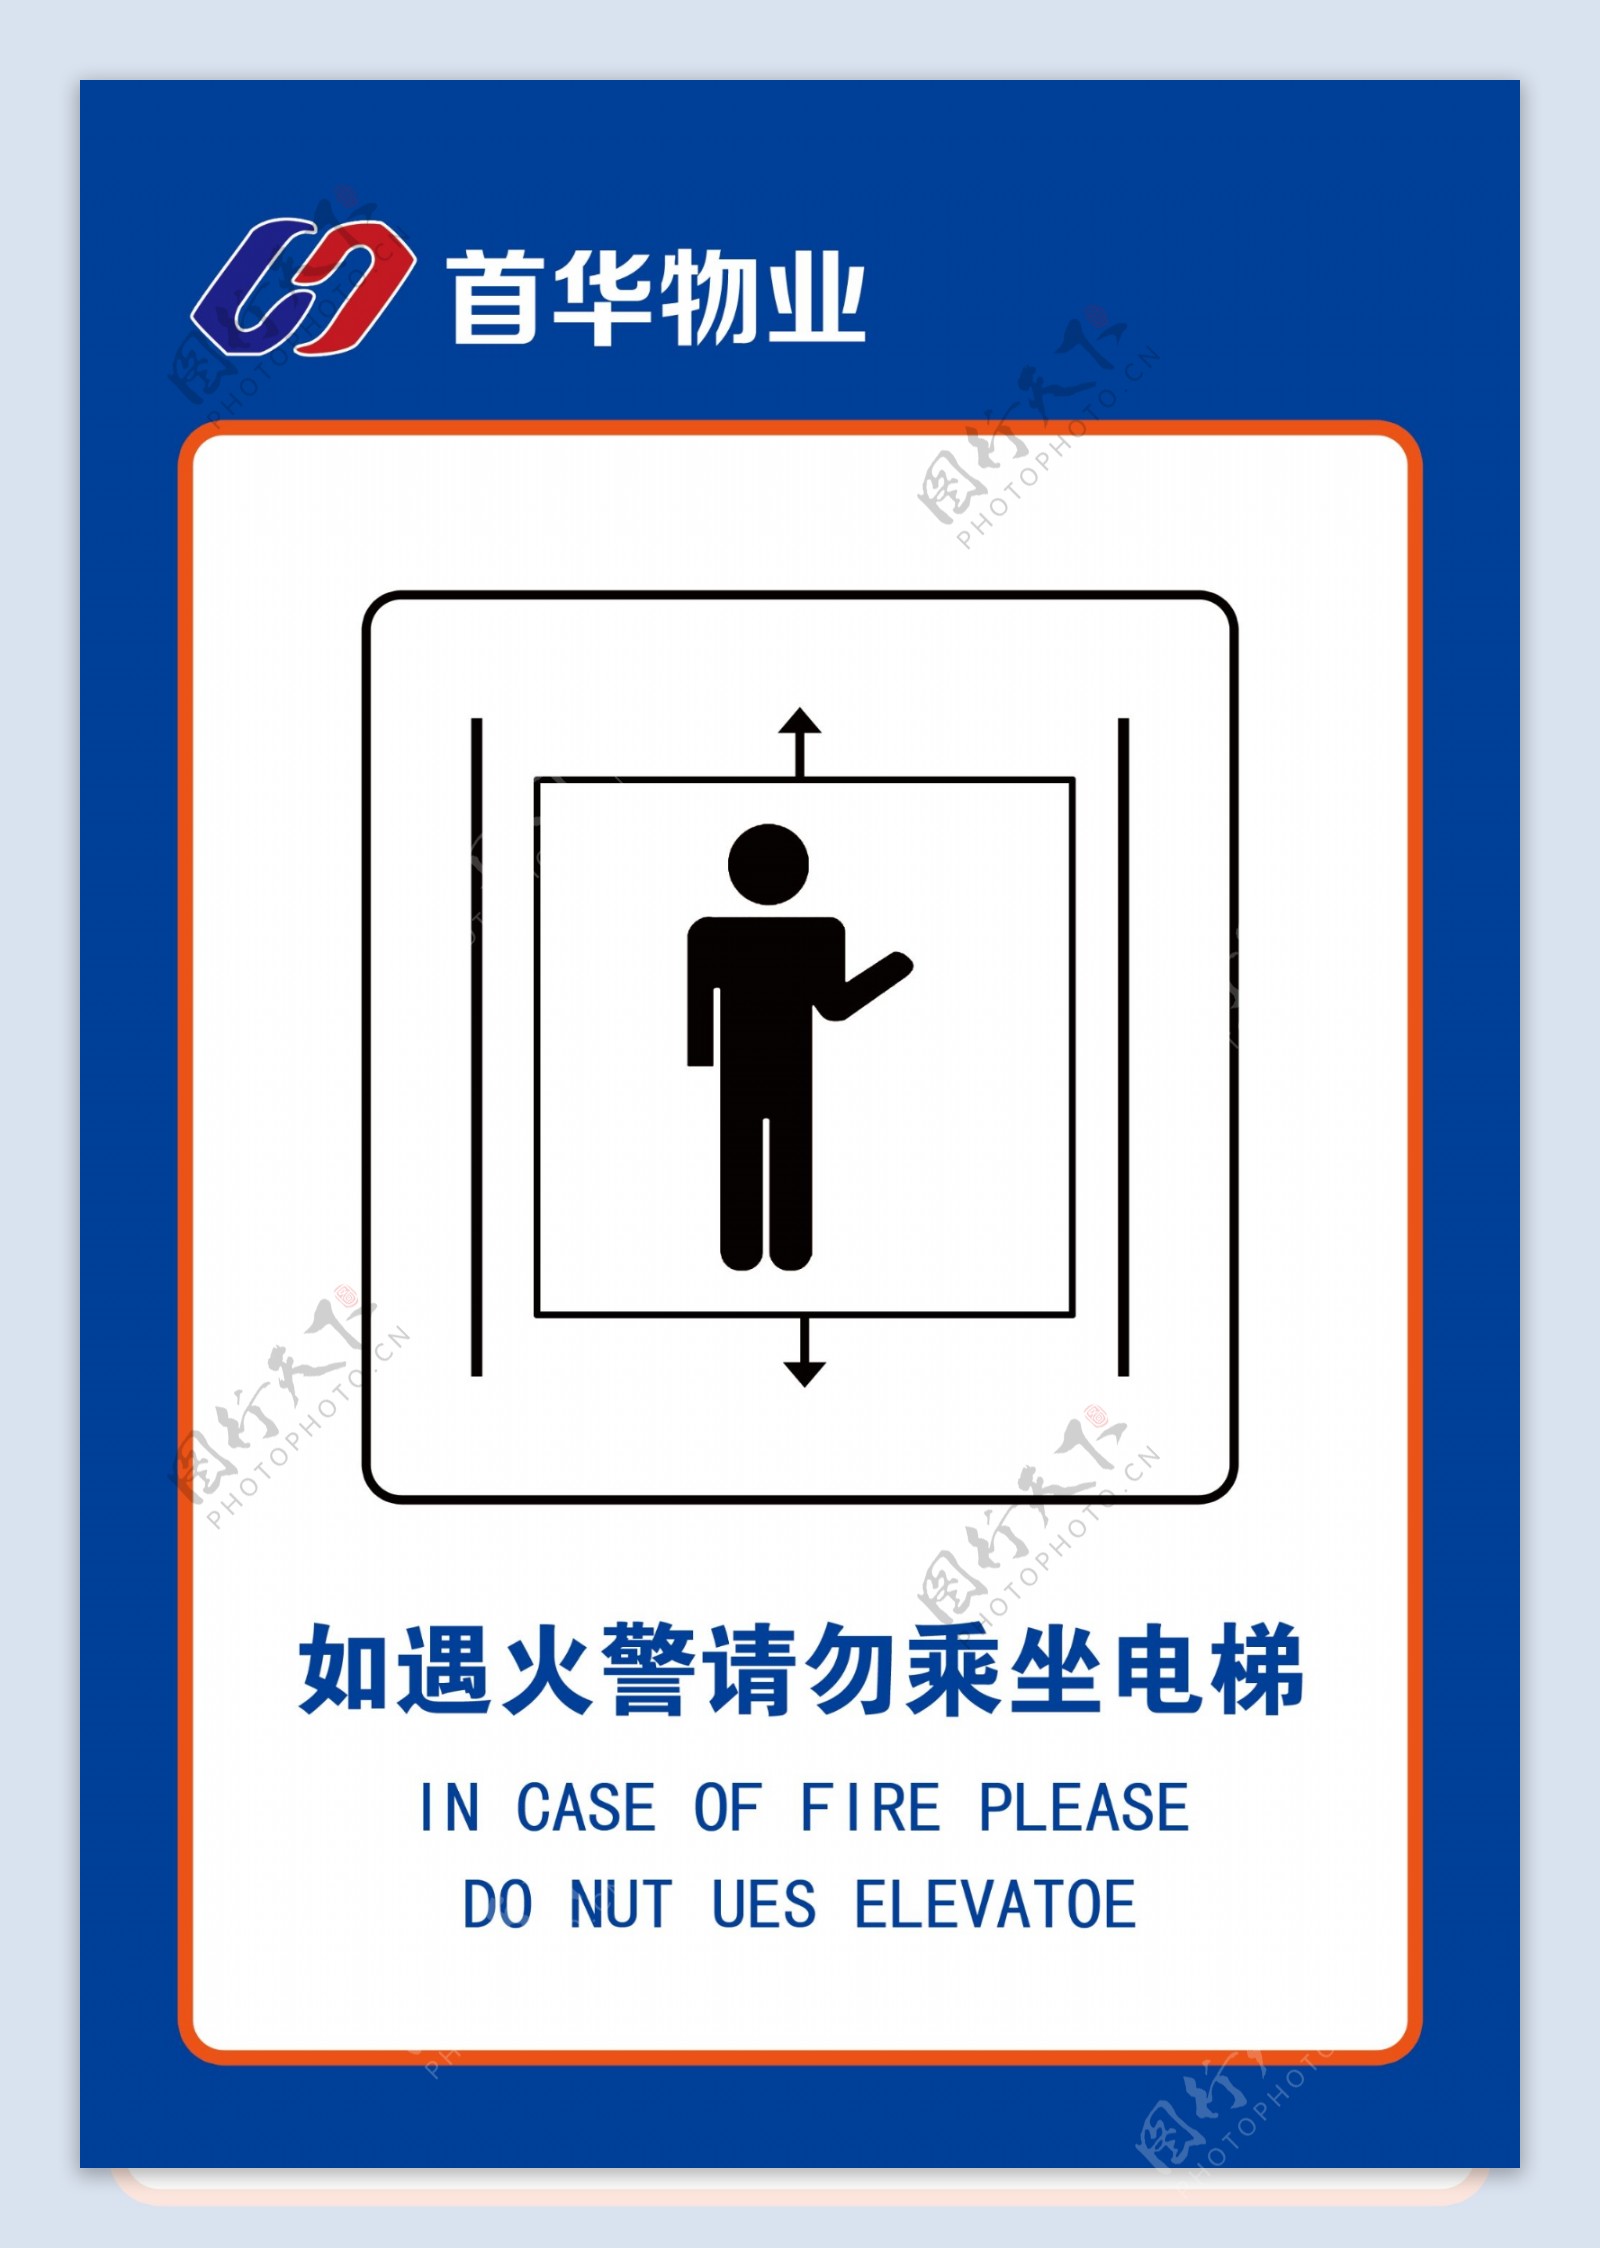 如遇火警请勿乘坐电梯